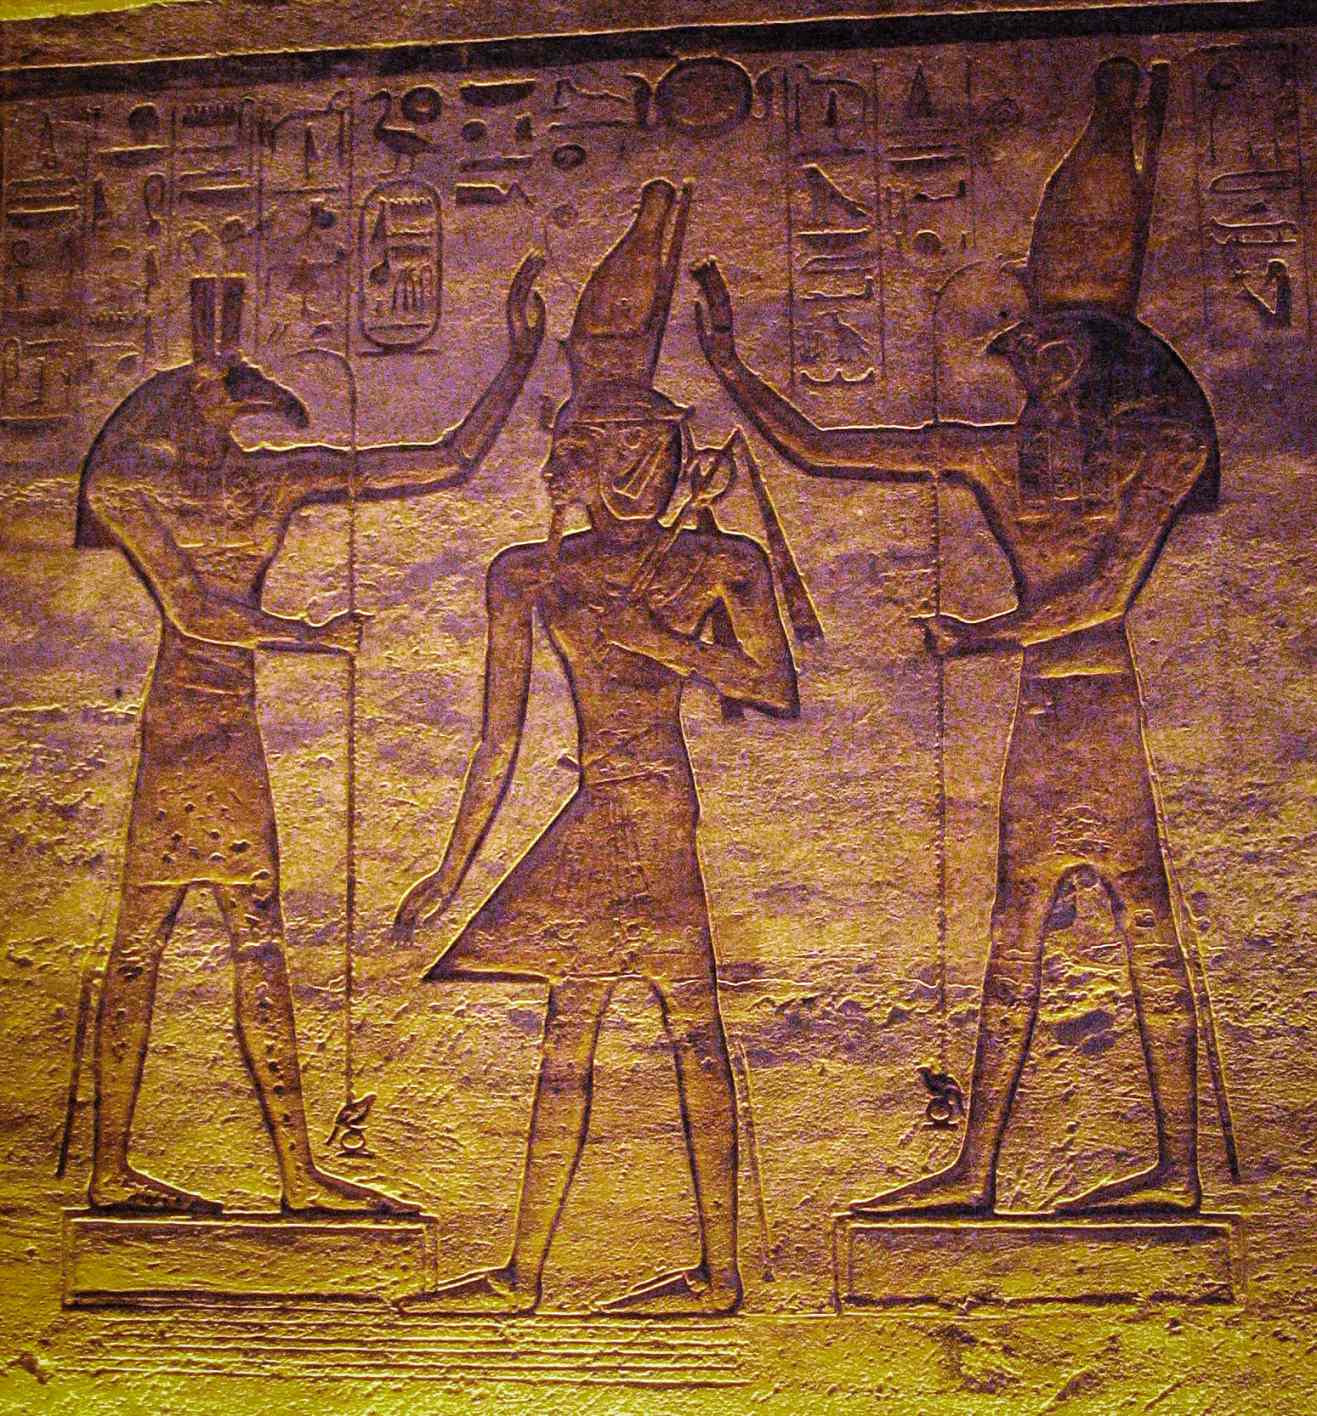 Set (Seth) en Horus aanbidden Ramses. De huidige studie toont aan dat de maan kan zijn vertegenwoordigd door Seth en de veranderlijke ster Algol door Horus in de Caïro-kalender.